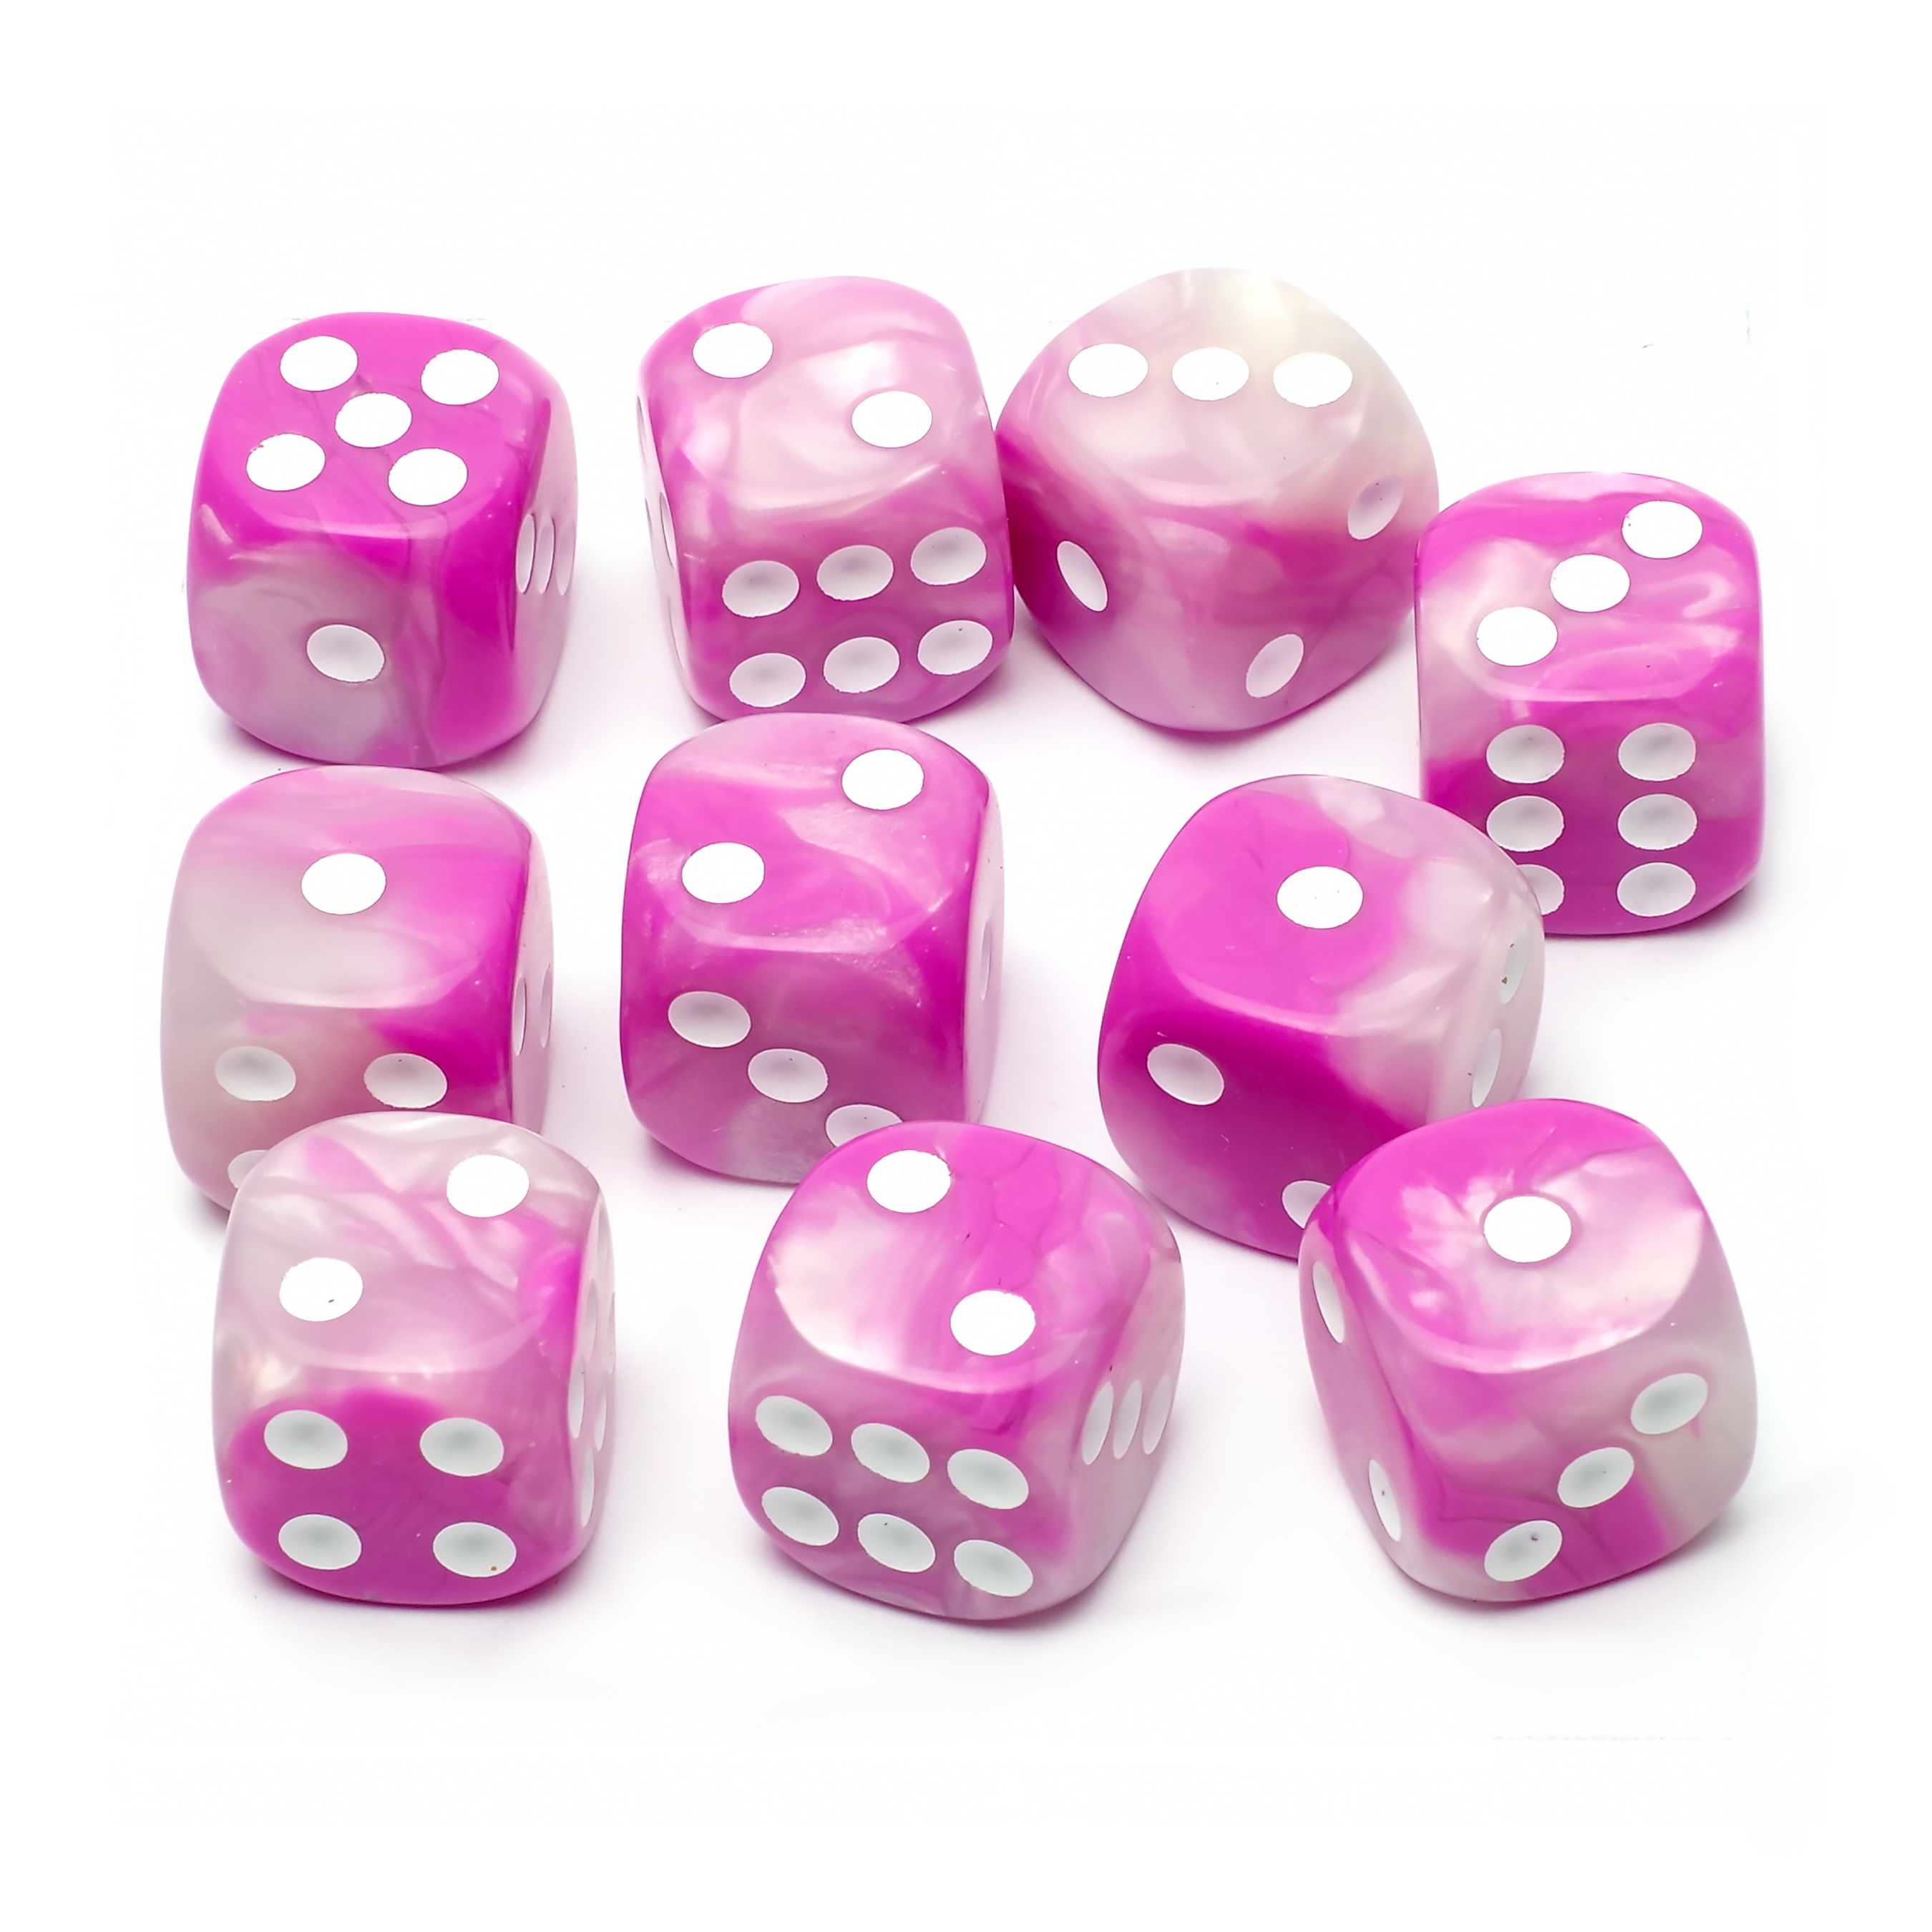 Набор кубиков STUFF-PRO d6, 10 шт, 16мм, бело-розовый набор игральных кубиков pandora box studio простые d6 16мм 12 шт голубой